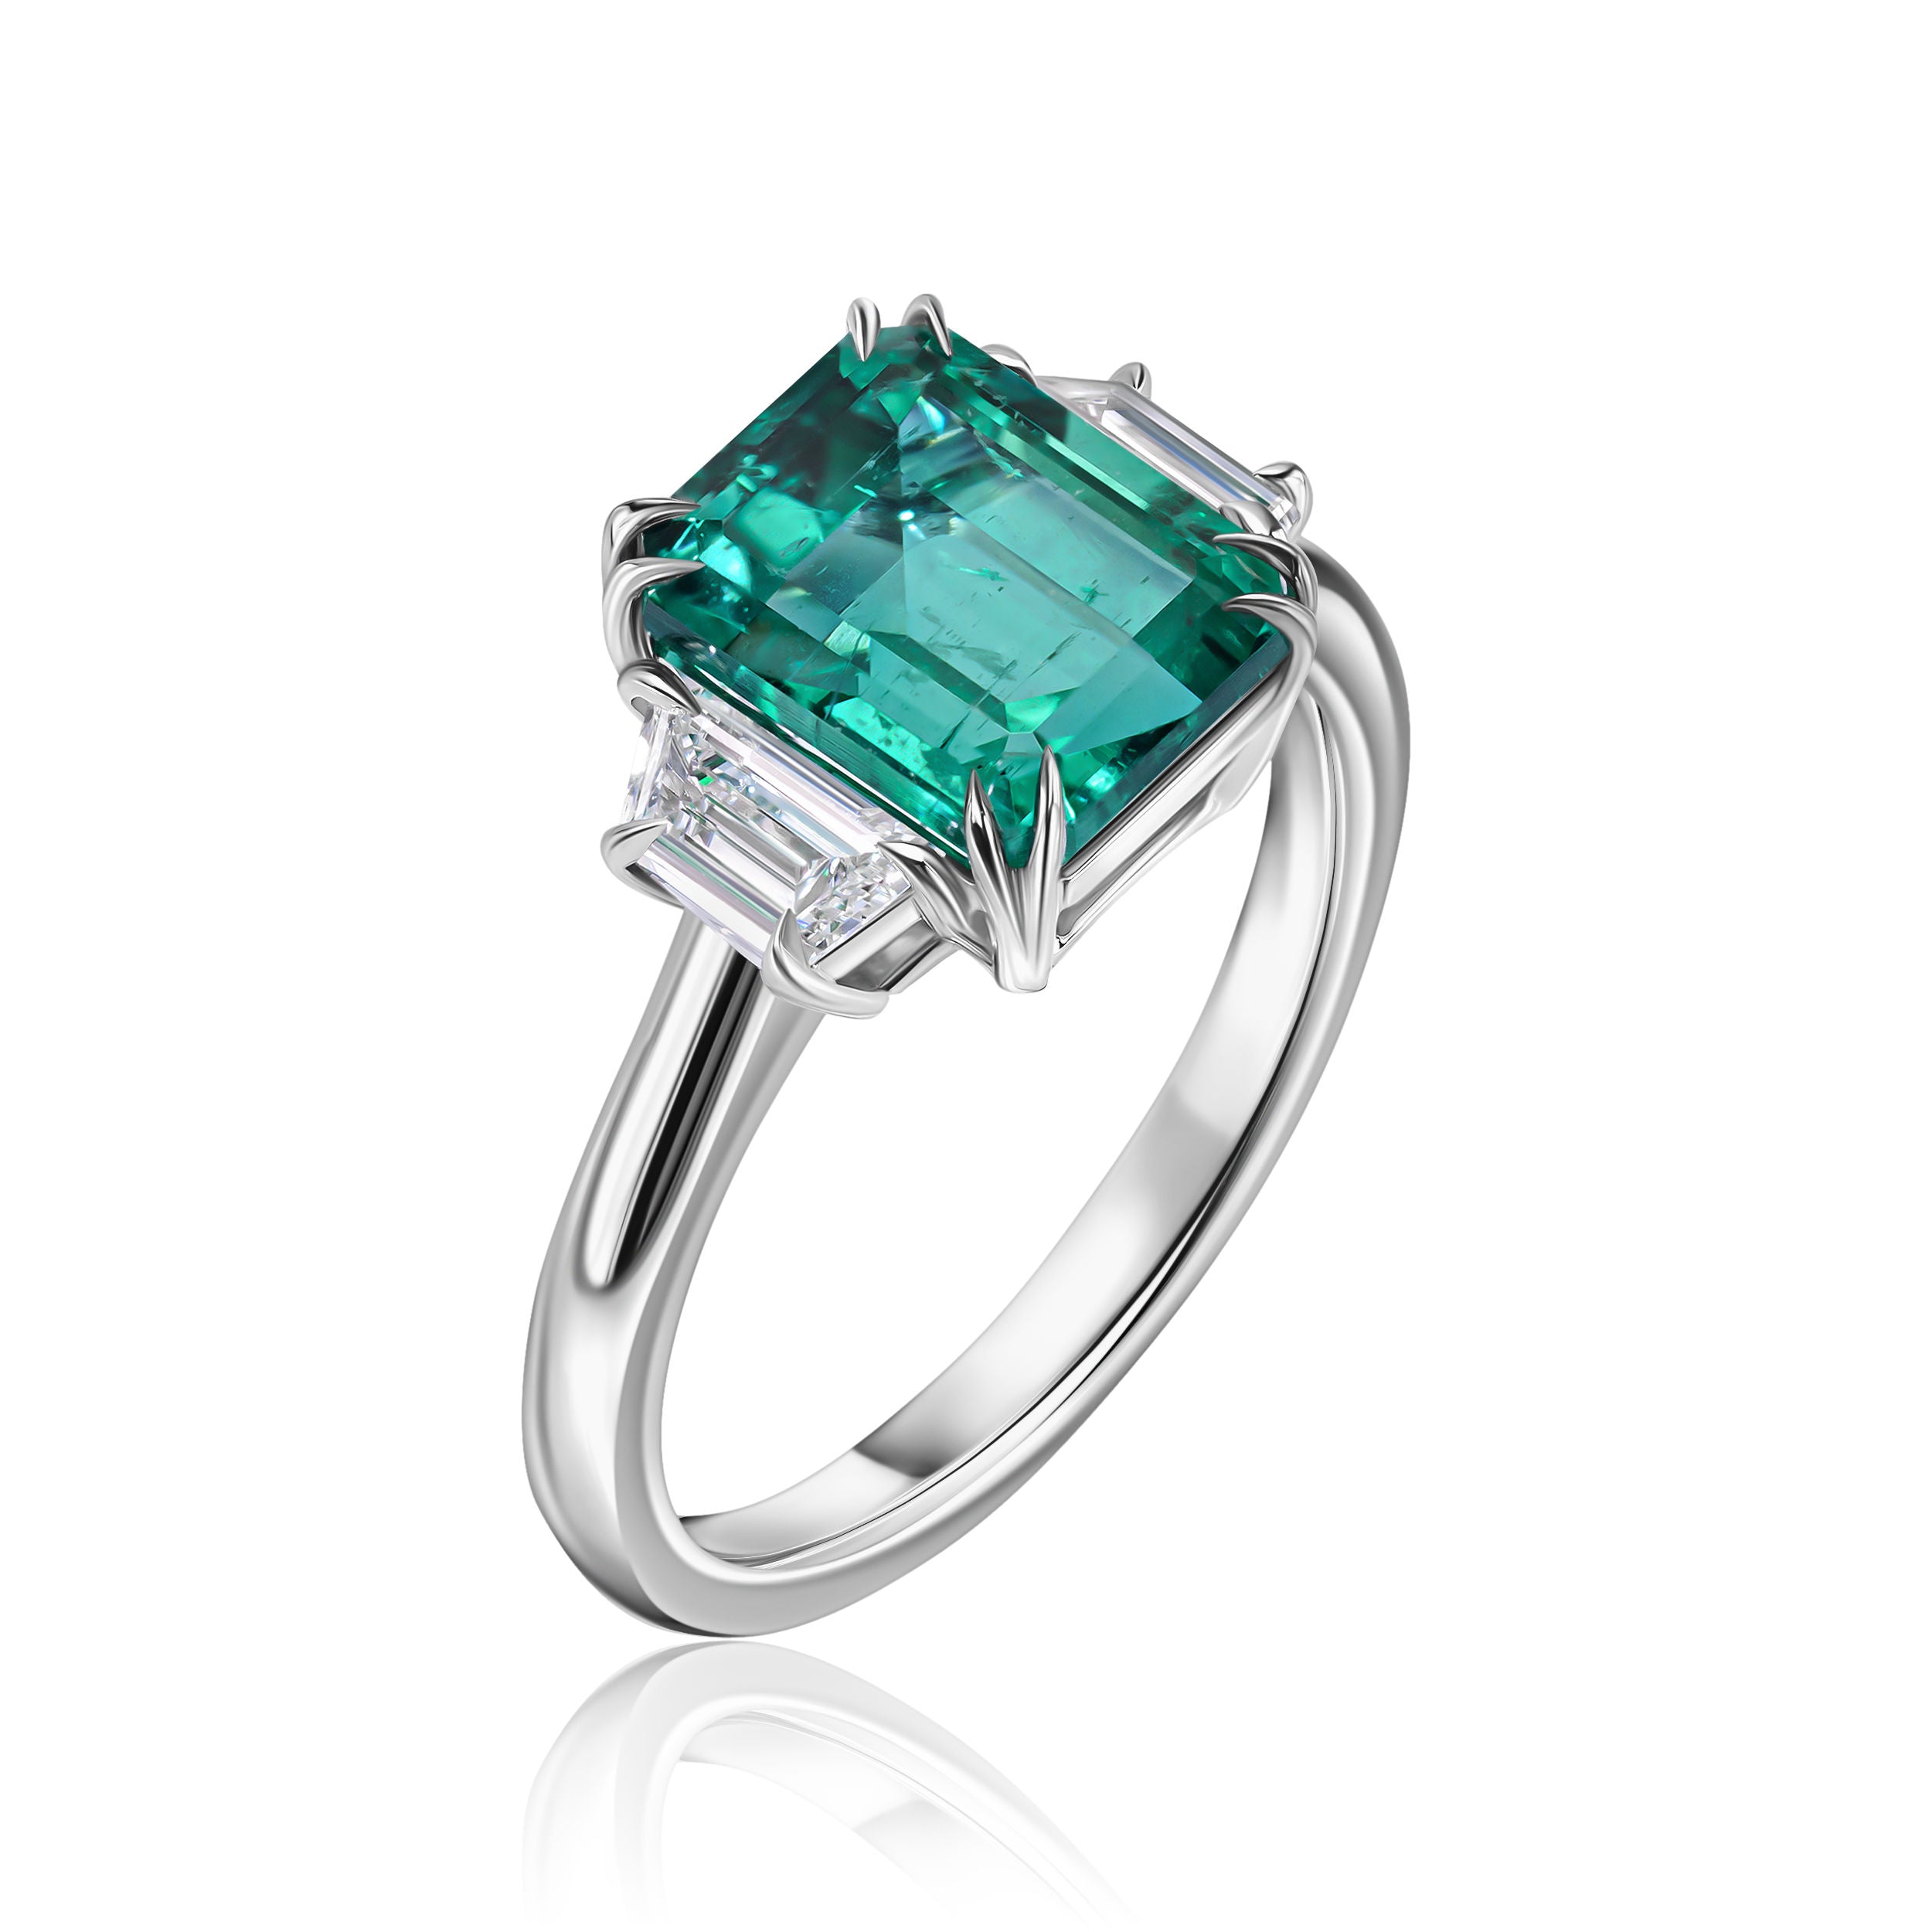 Exquisite Emerald-Cut Emerald Ring -3.64ct TW